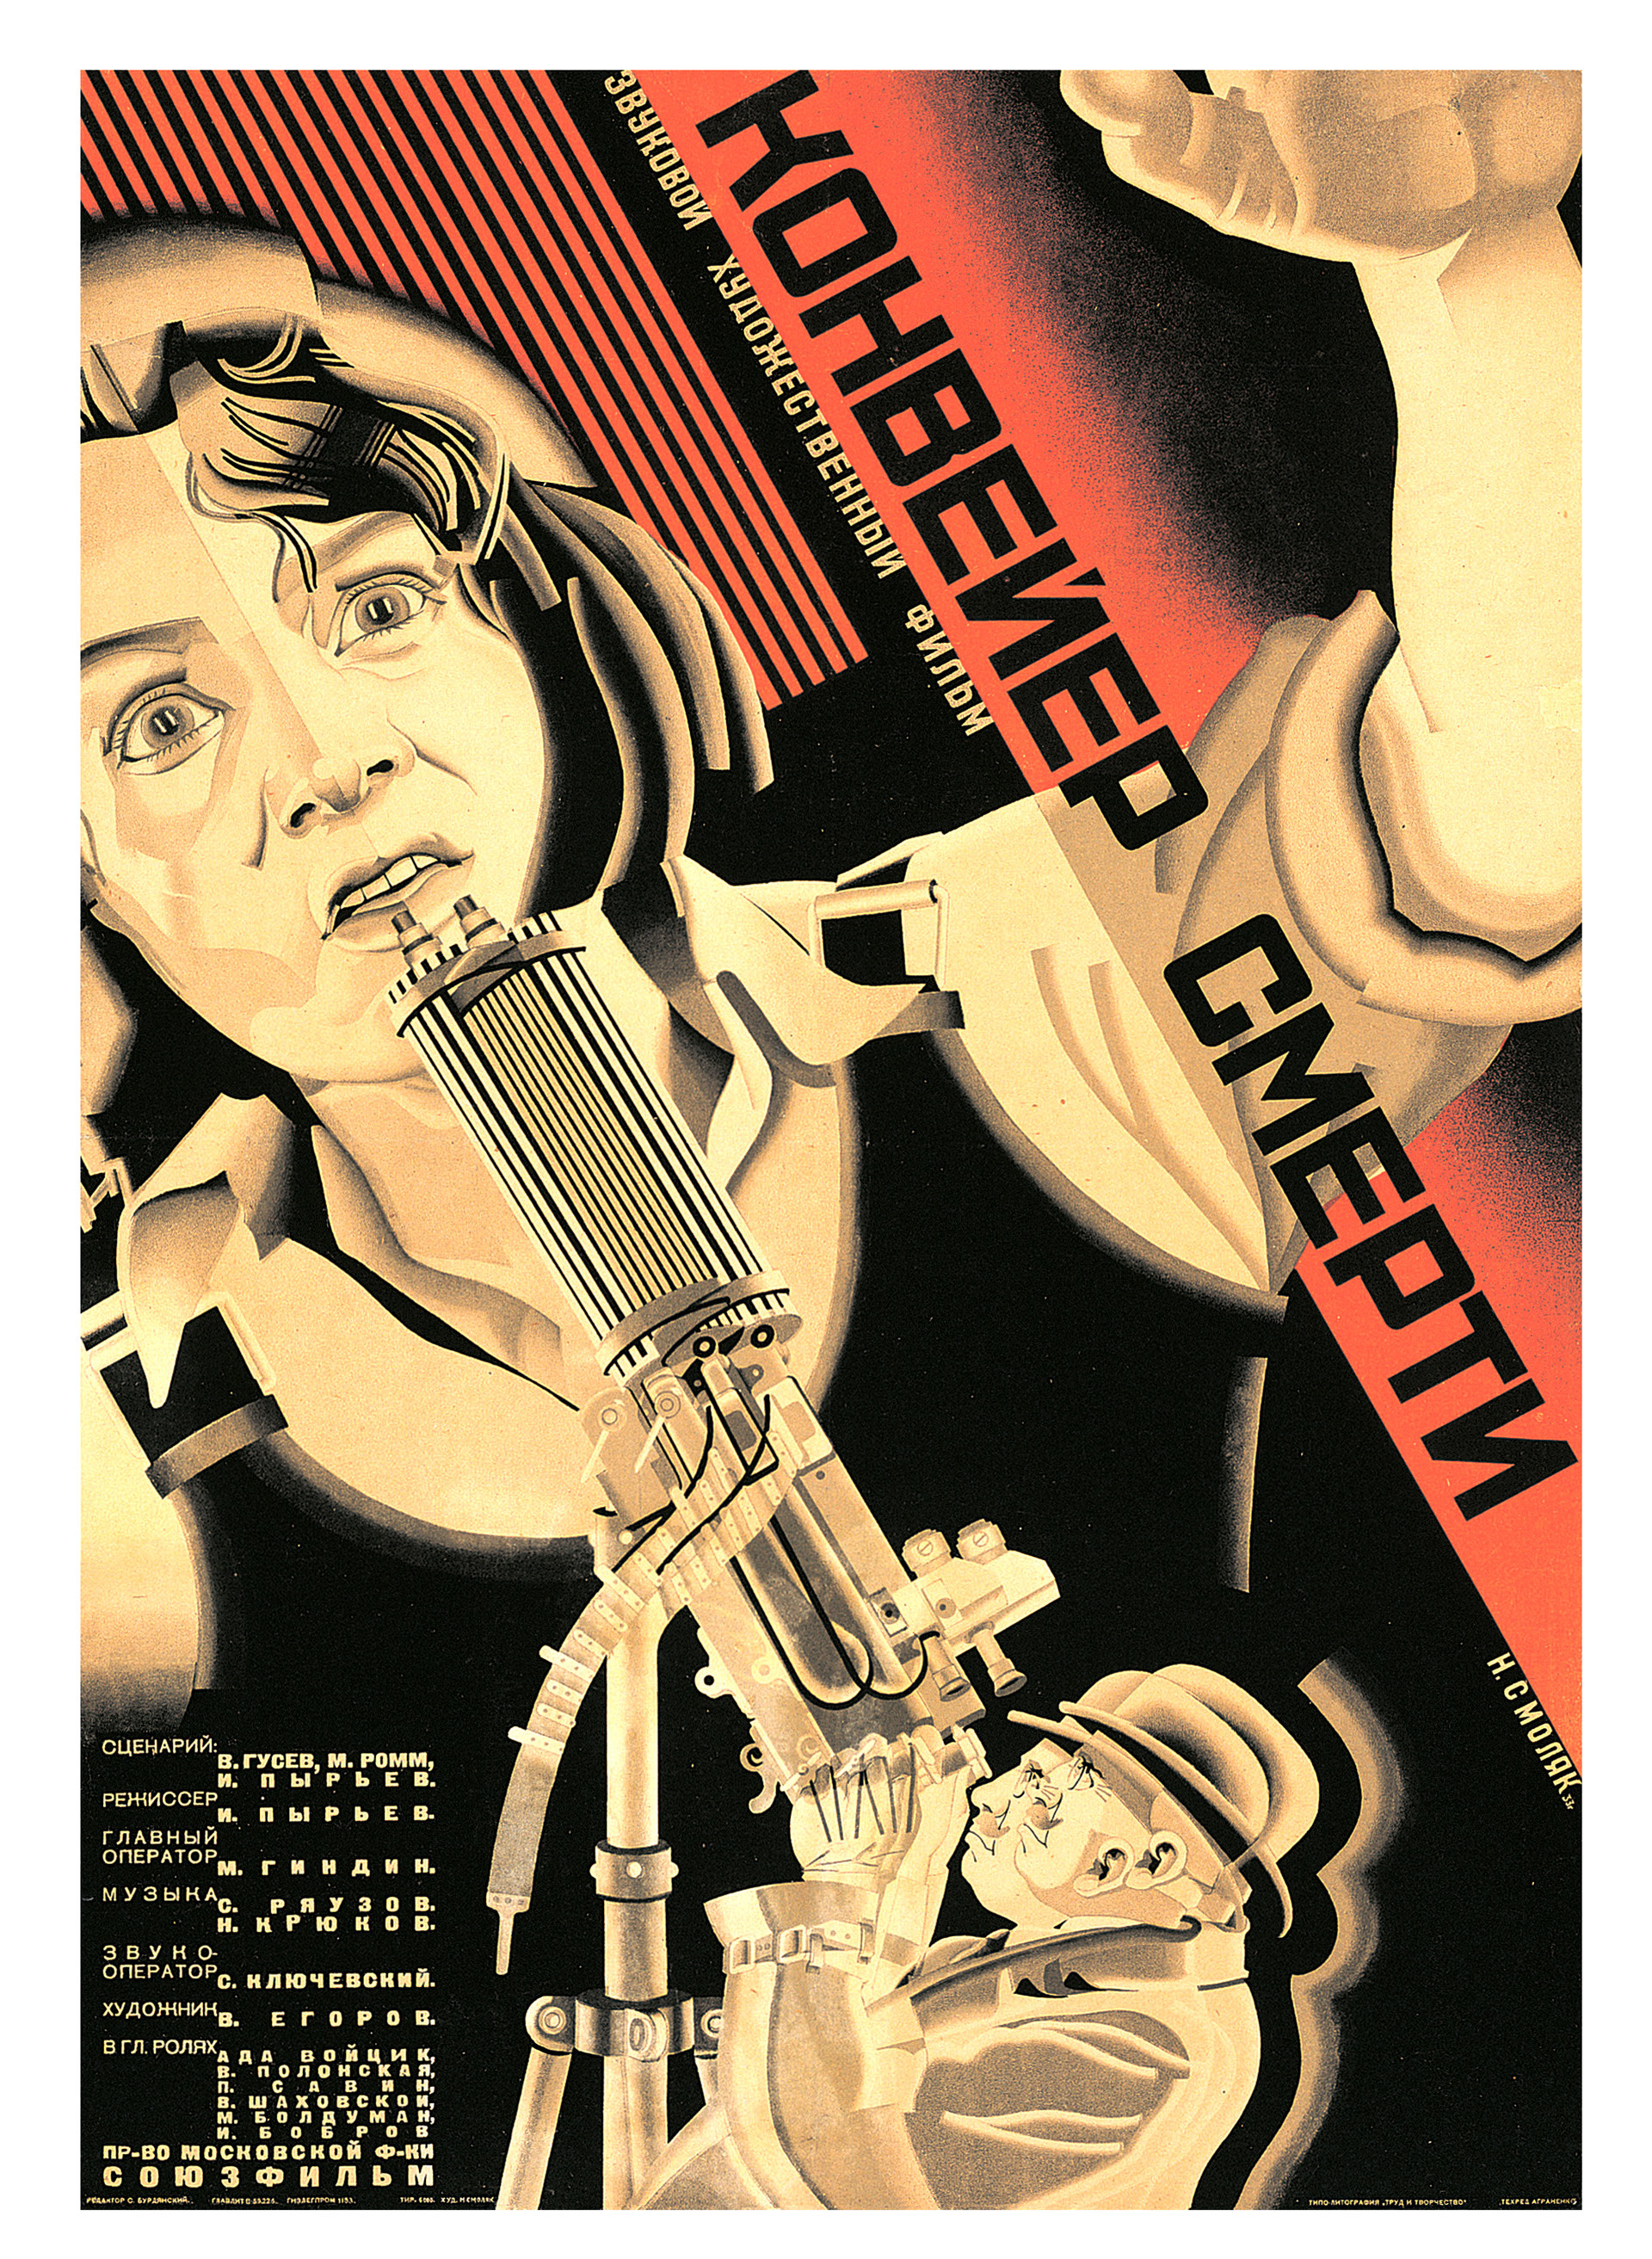 Smoliakovski, cartel para la película ‘Konveier smerti’, 1933.